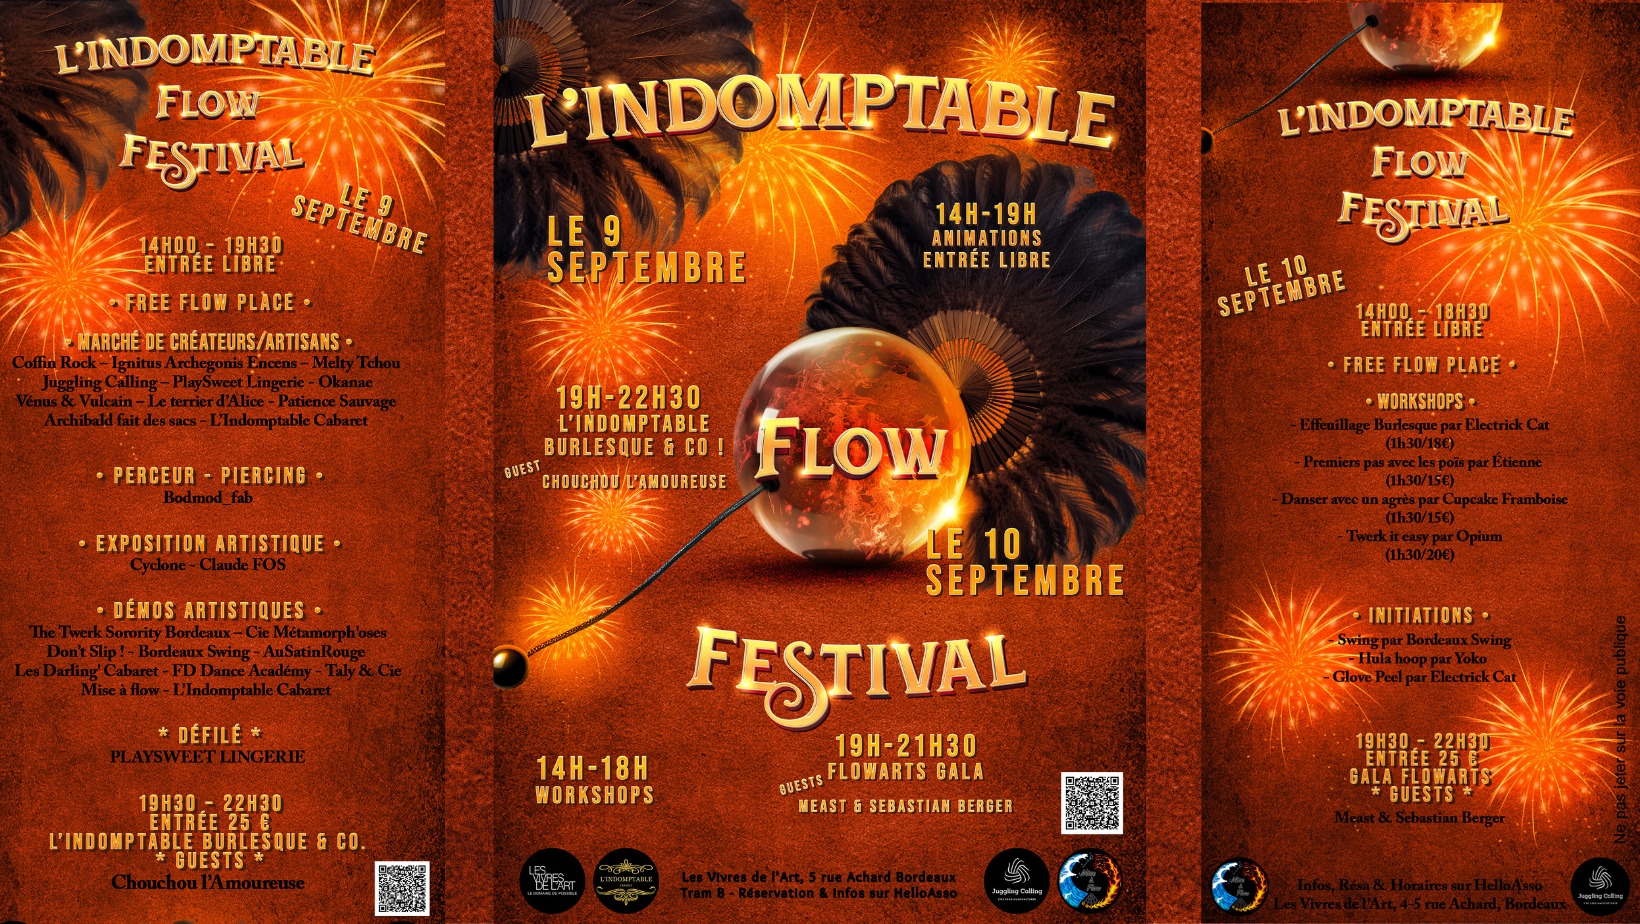 L'indomptable Flow Festival